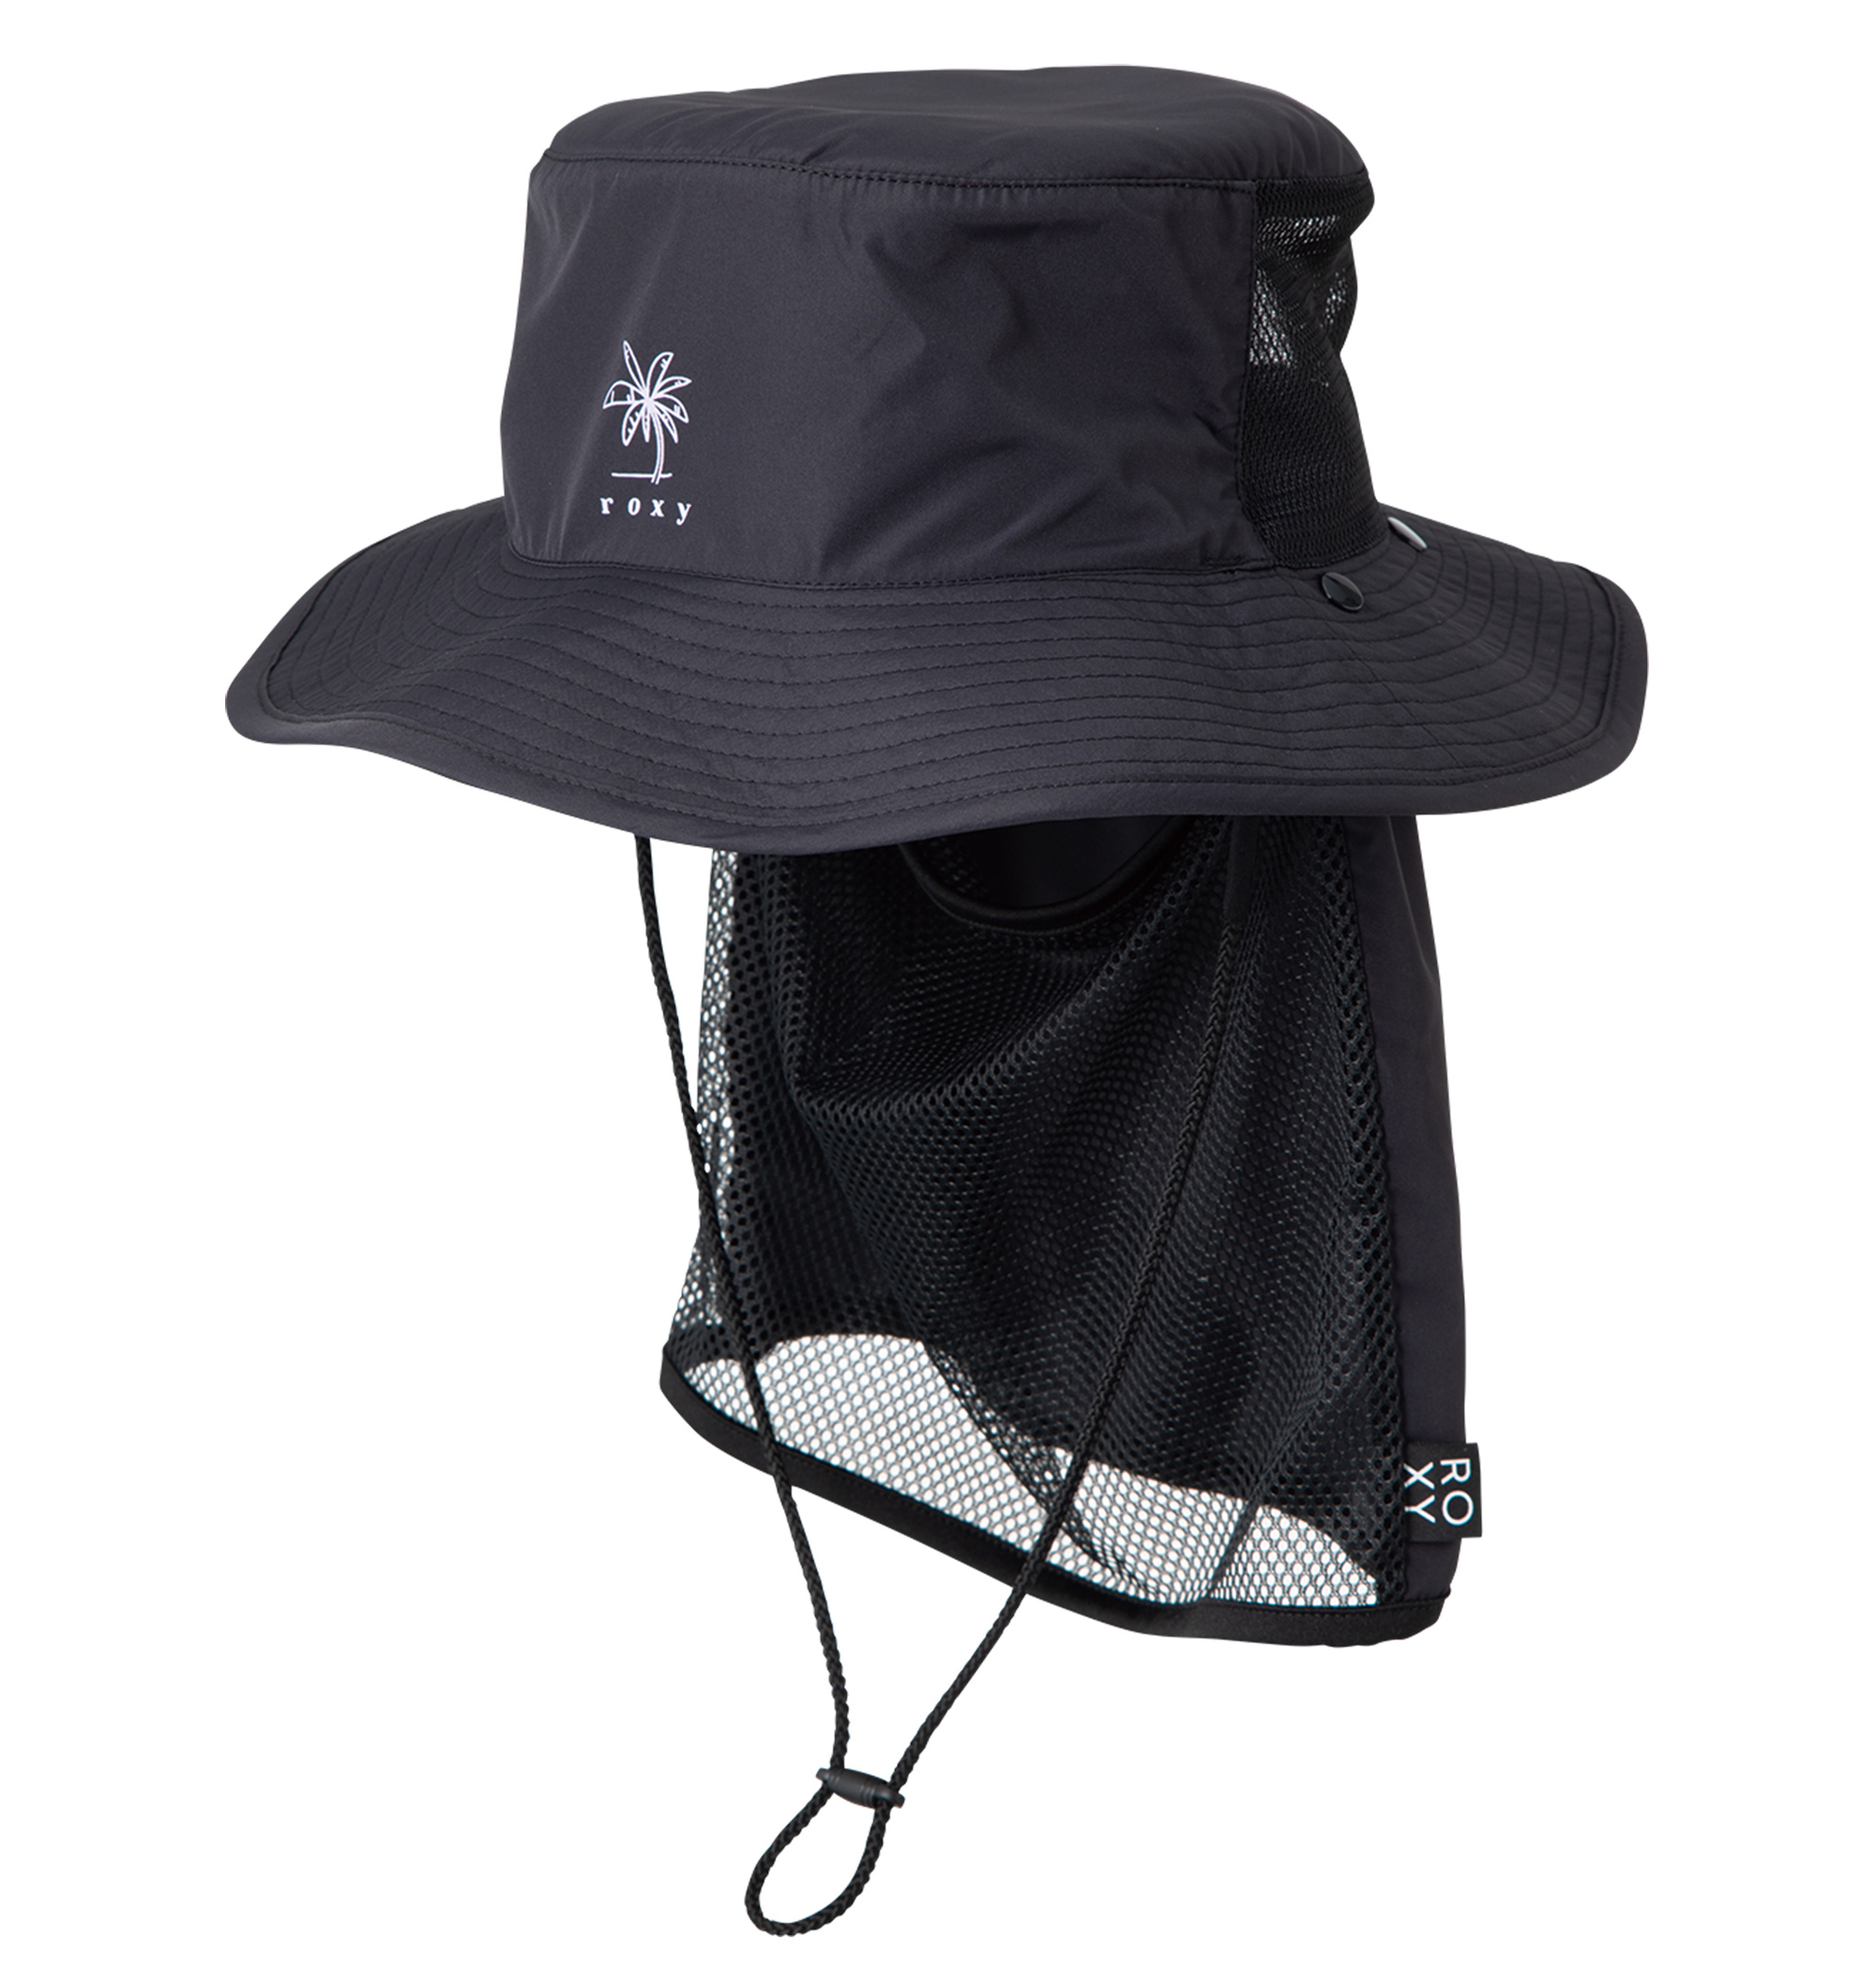 UV SUP CAMP HAT ポリエステル100% UV CUT 撥水加工素材の日焼け防止ハット 